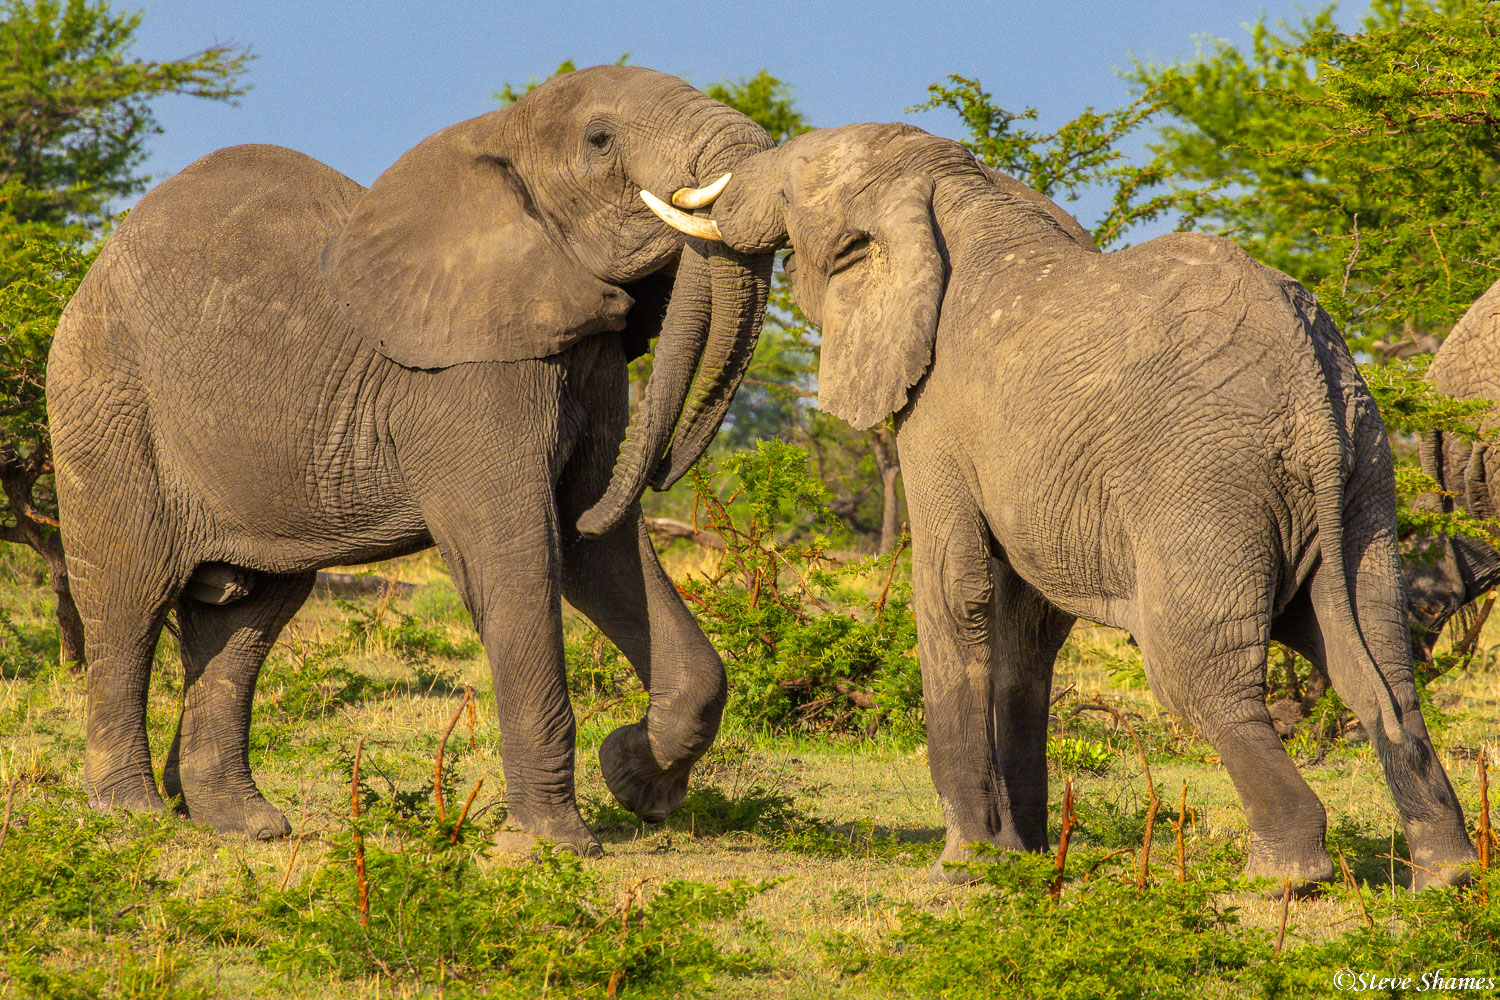 Elephants jostling each other, as elephants like to do.